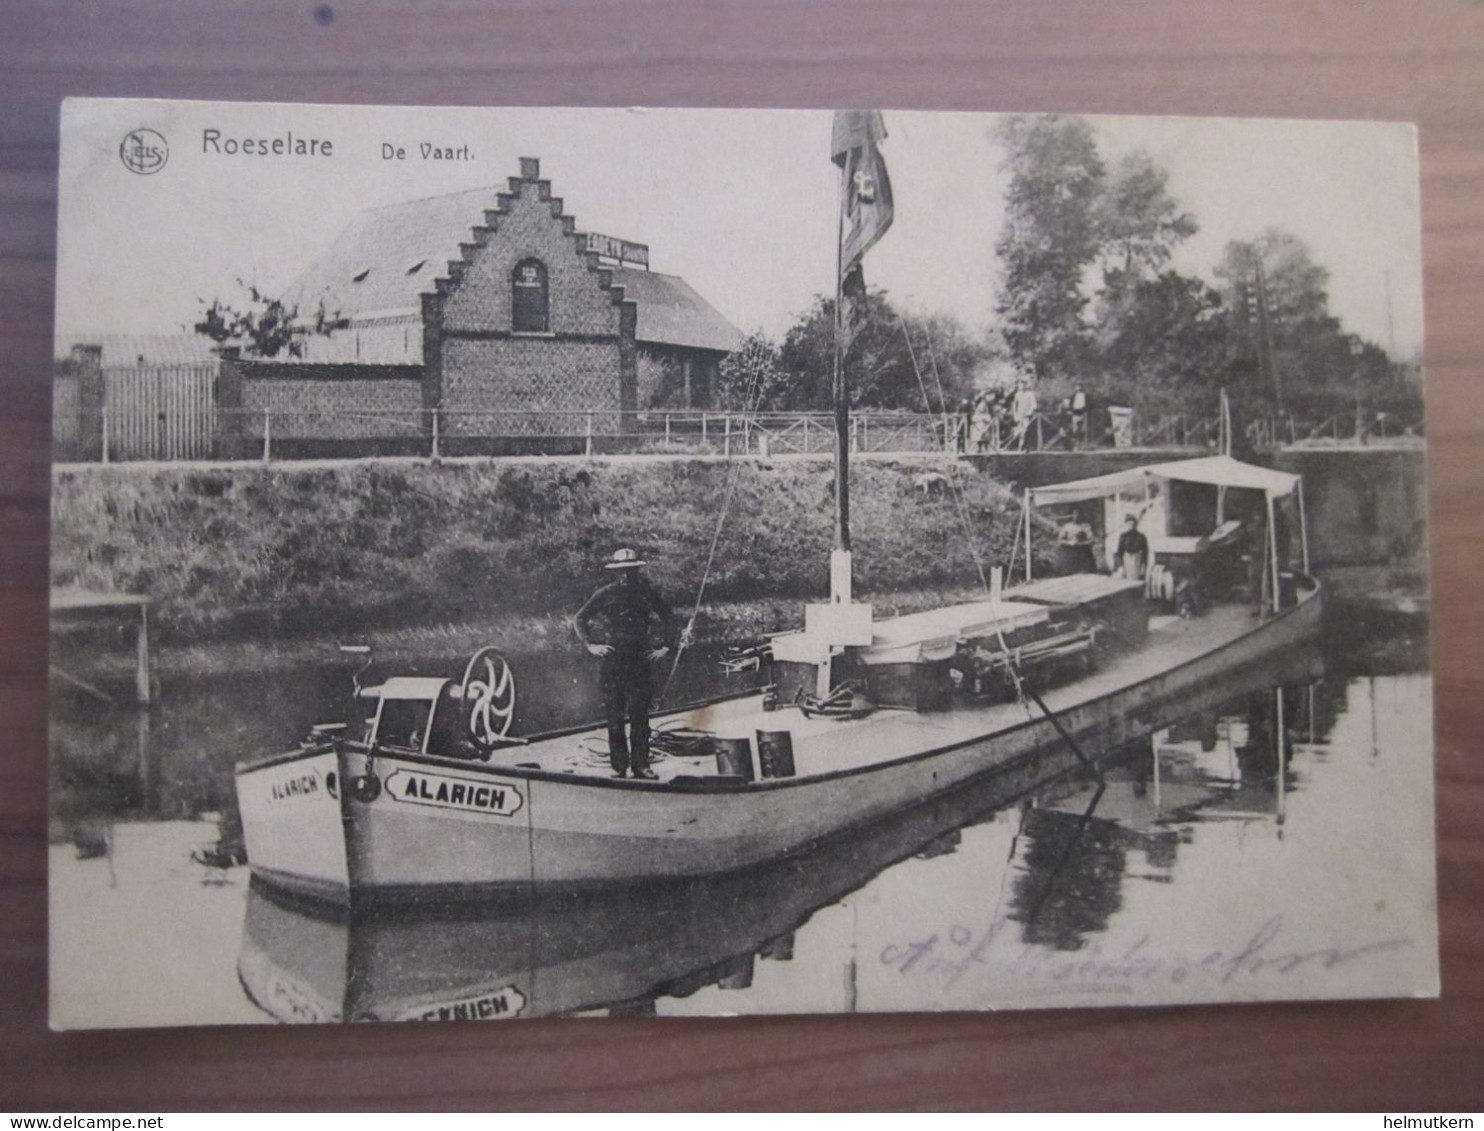 AK - Roeselare - De Vaart - Schiff Alarich - Belgien - Westflandern - 1917 - Roeselare